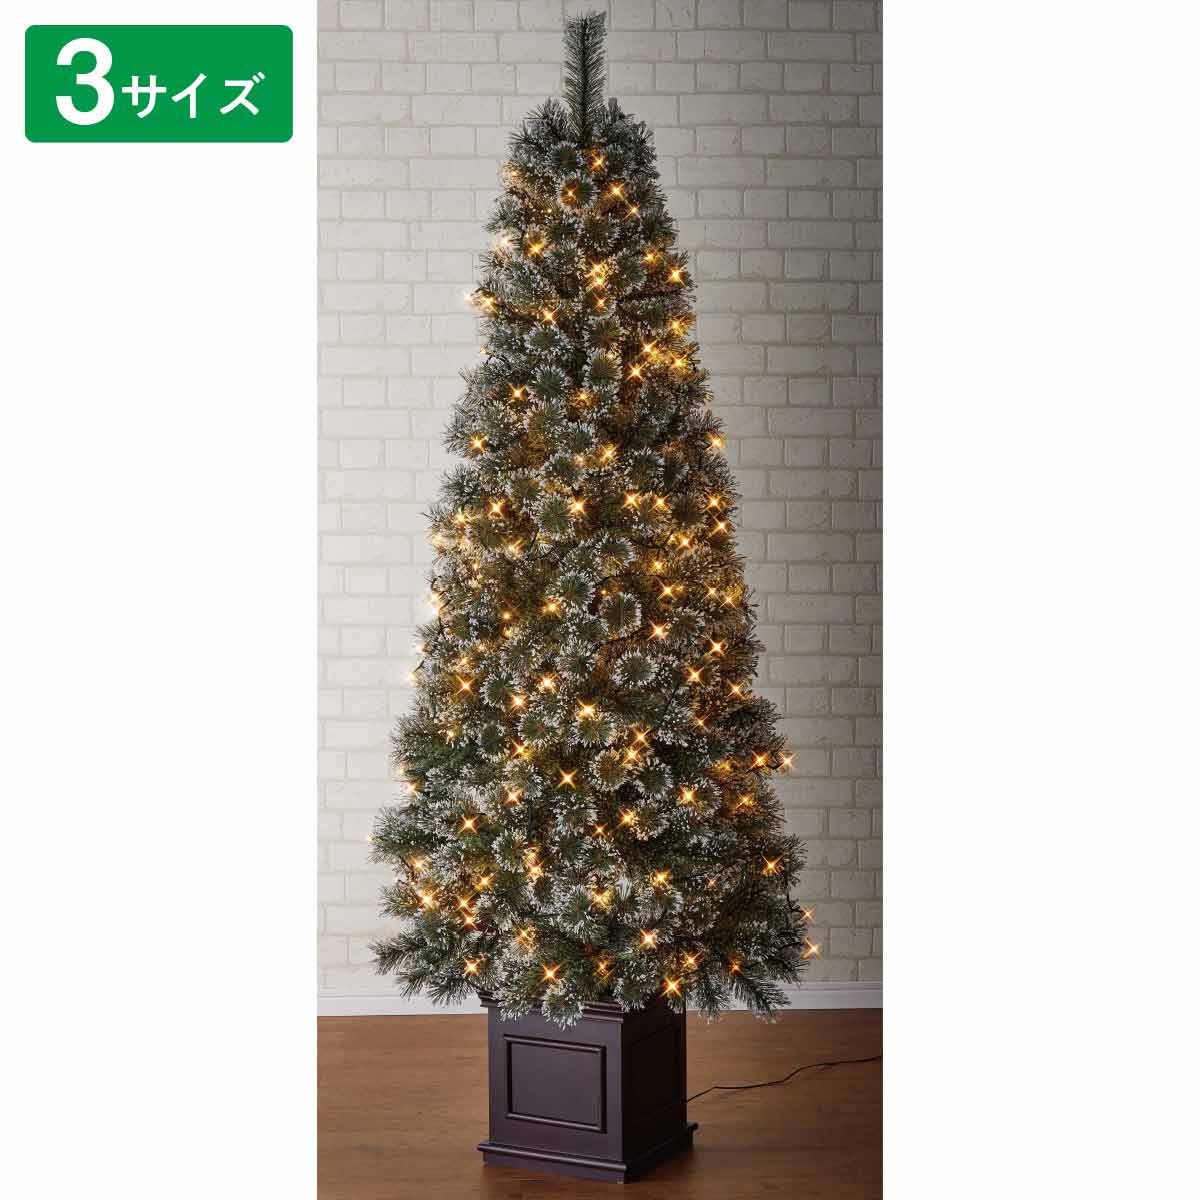 ベース付きヌードブラシクリスマスツリー LEDライト付き H150xW71cm【通販】ストア・エキスプレス